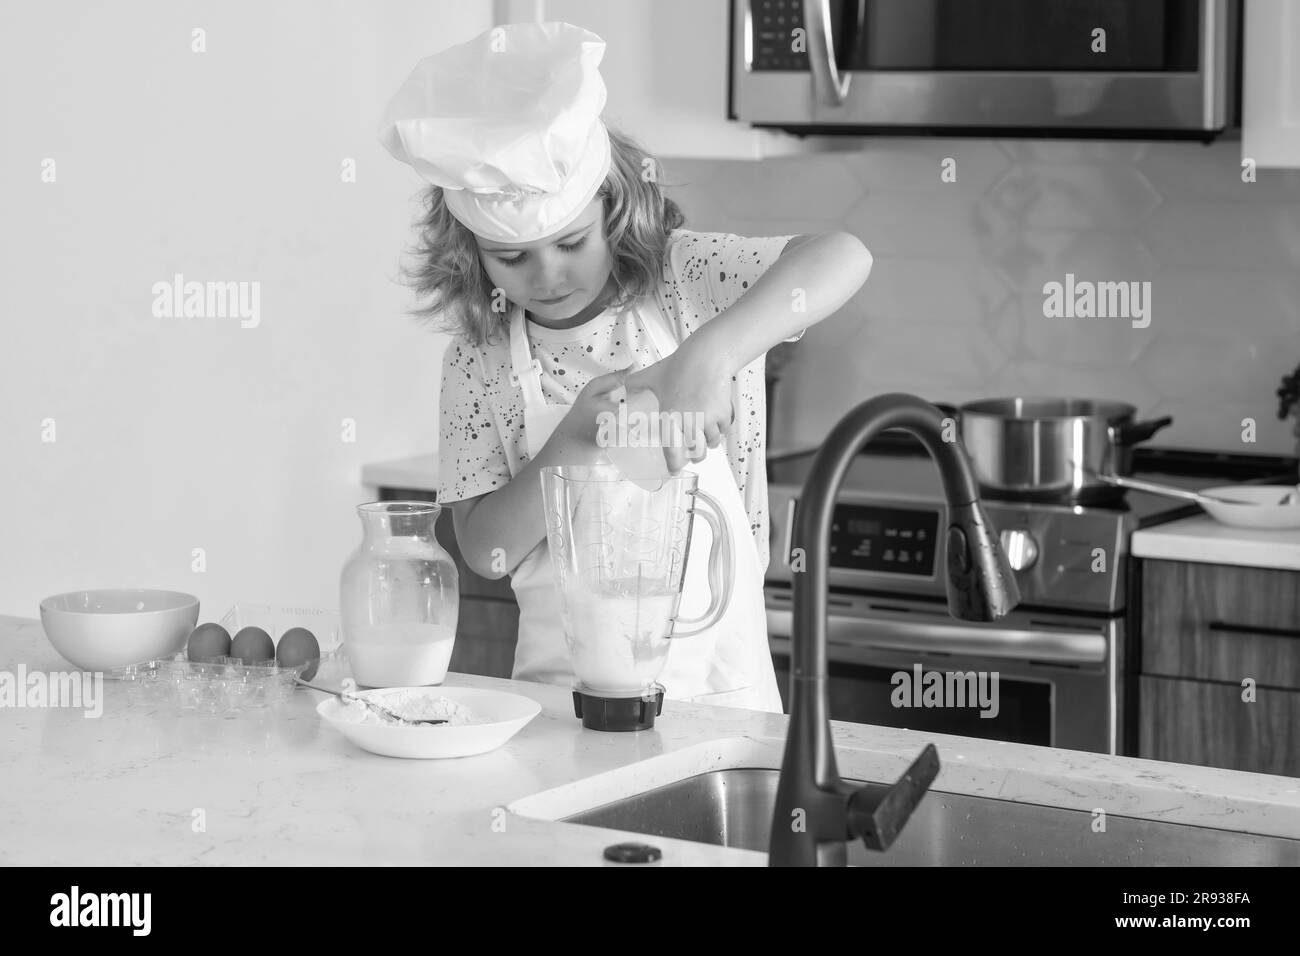 Kid Chef Cook lernt, wie man in der Küche einen Kuchen macht. Kinder machen lecker. Eier, Milch und Mehlzutaten zum Backen von Keksen oder Stockfoto